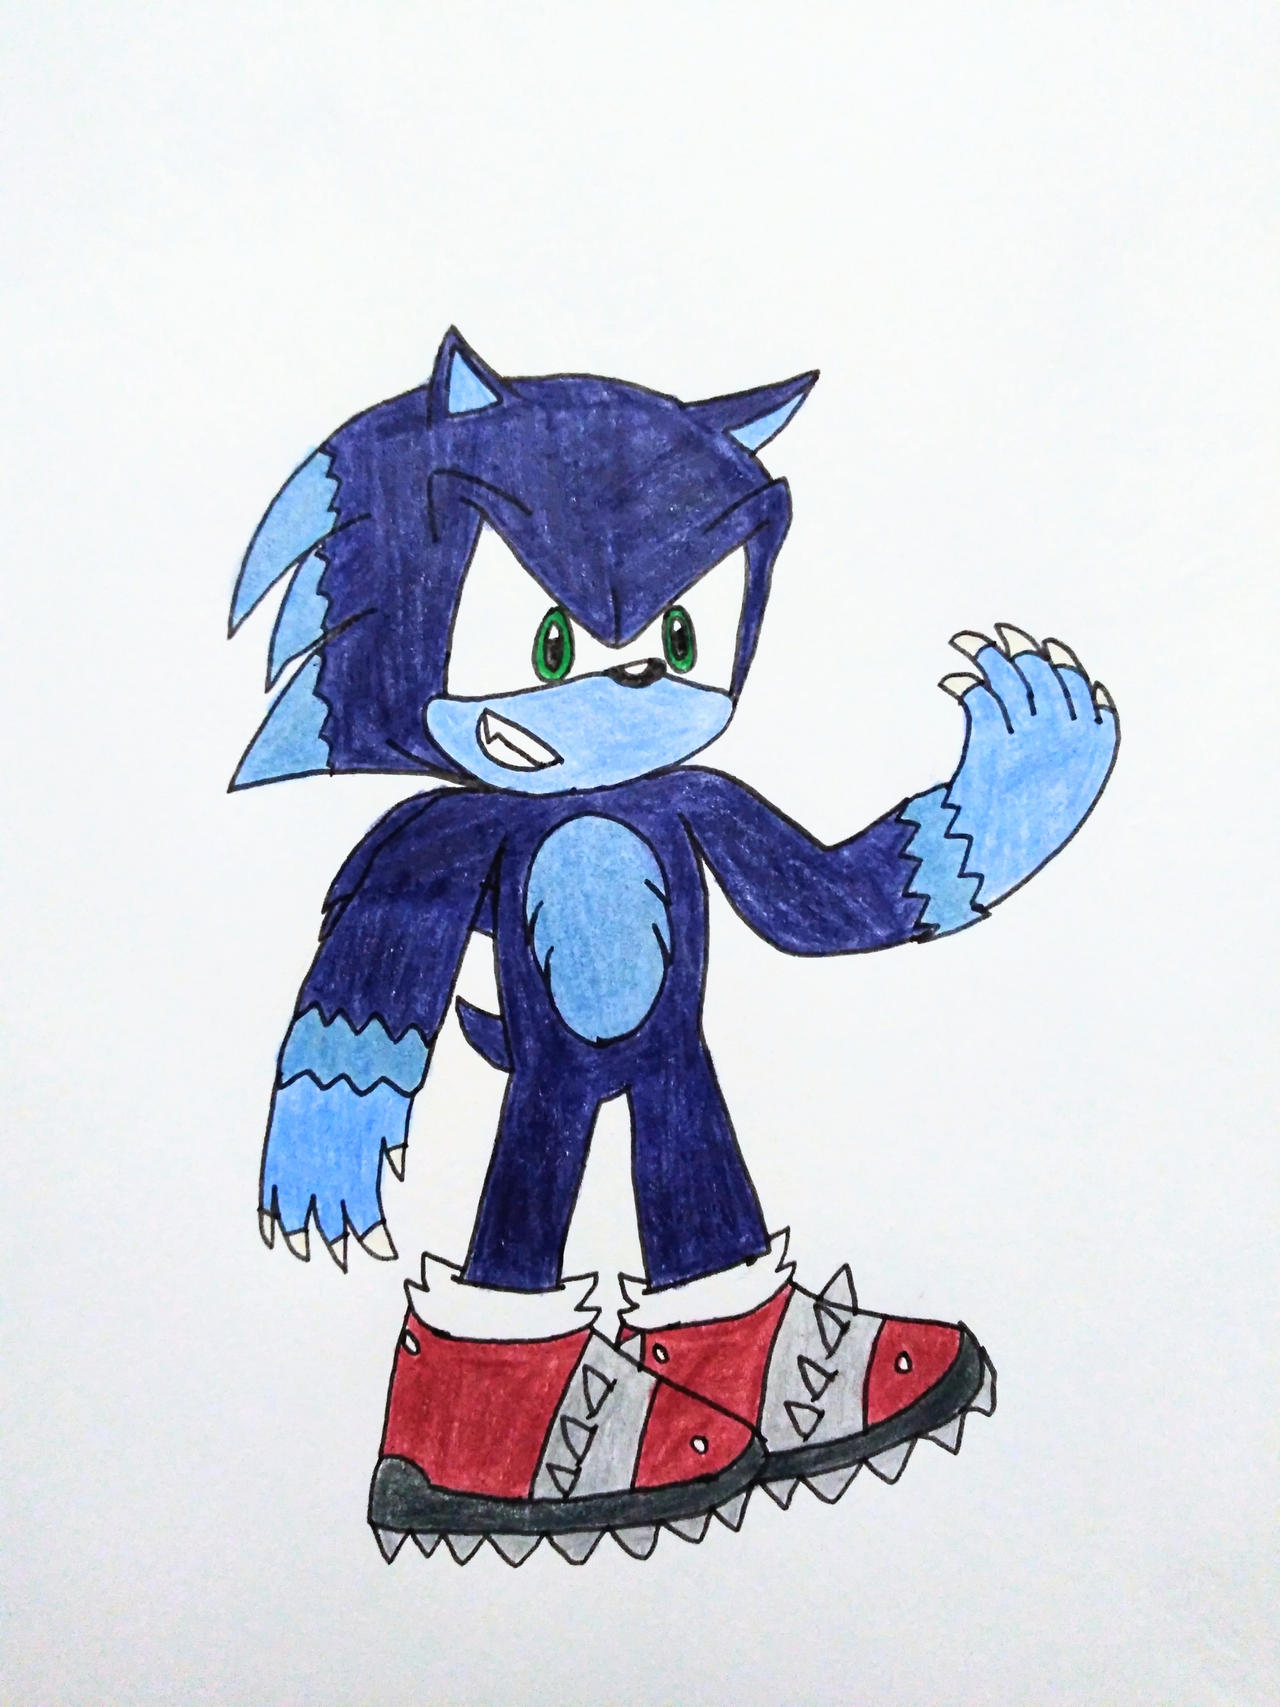 Dark Sonic (Sonic X Redraw) by Sonicgirlfriend65 on DeviantArt